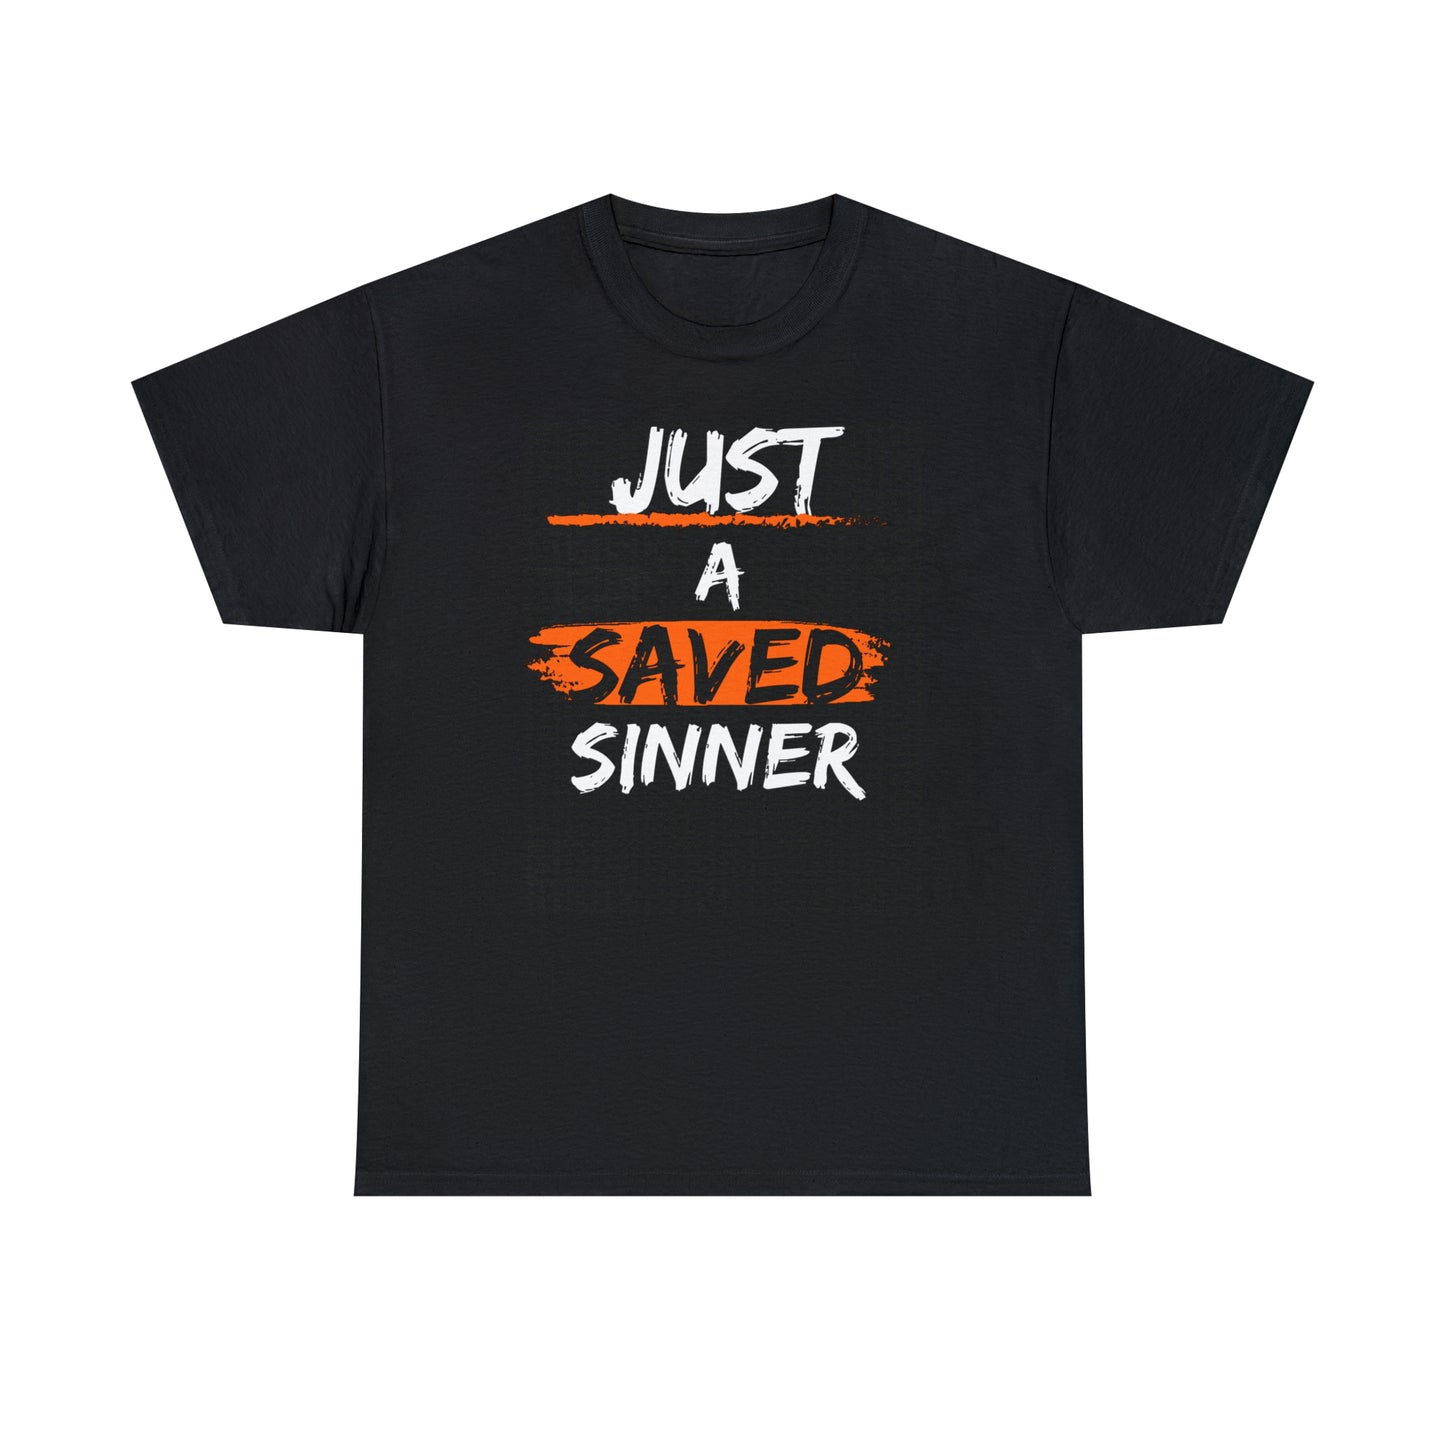 Just a saved sinner